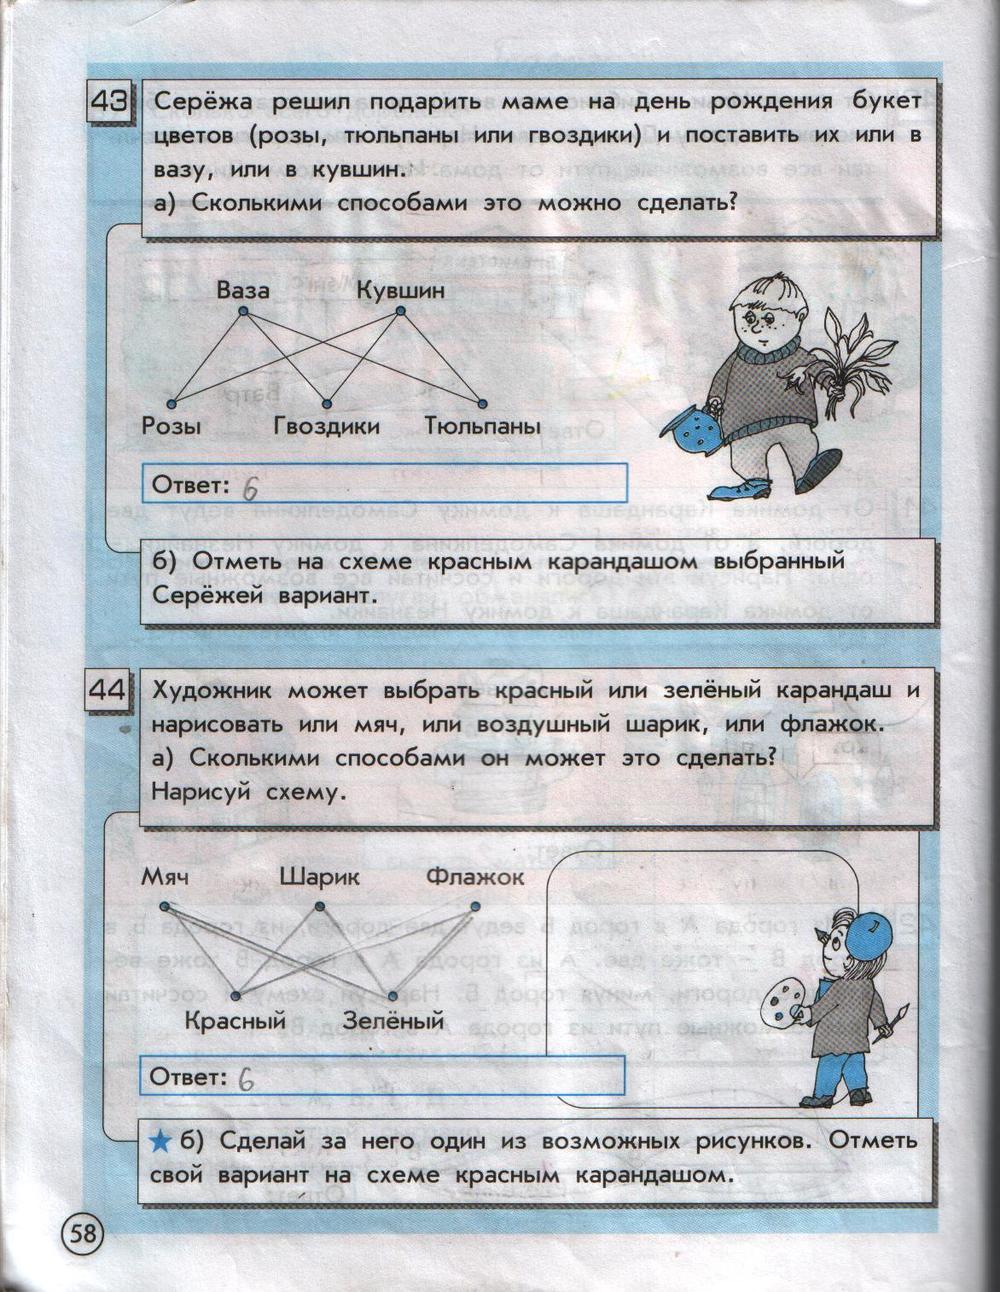 ГДЗ Информатика 2 класс часть 2 страница 58 Горячев, Горина